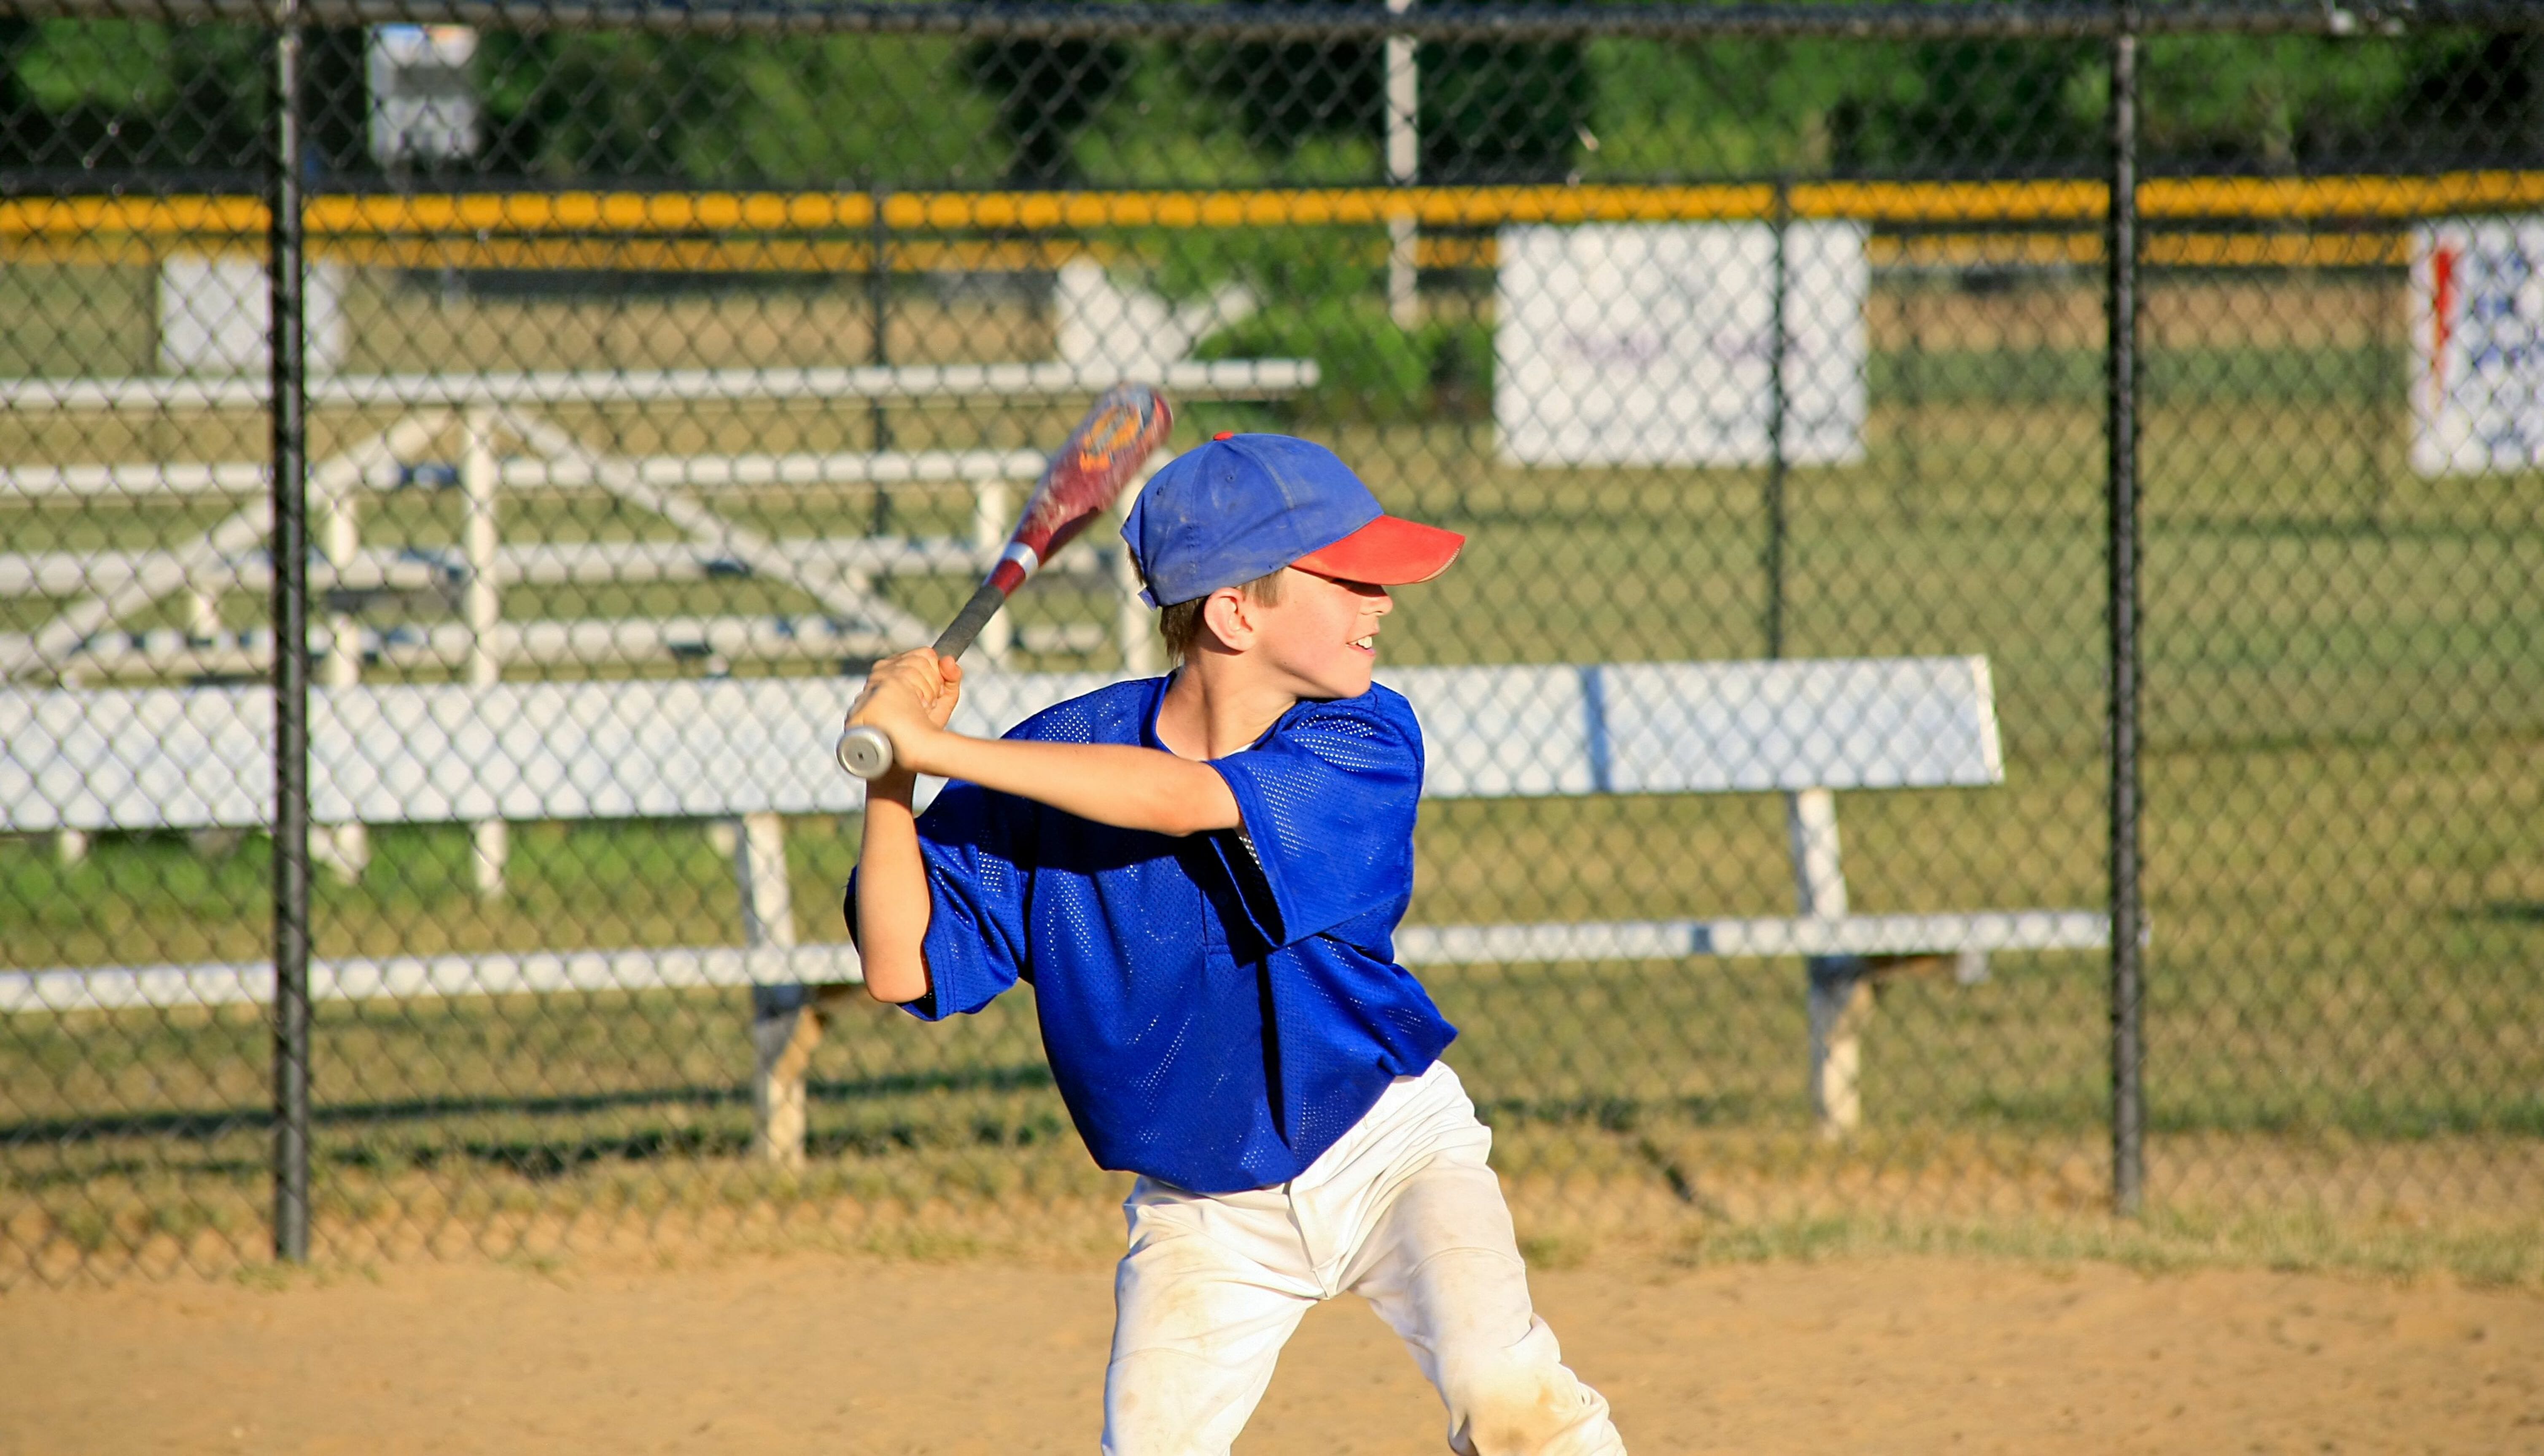 野球を練習している少年